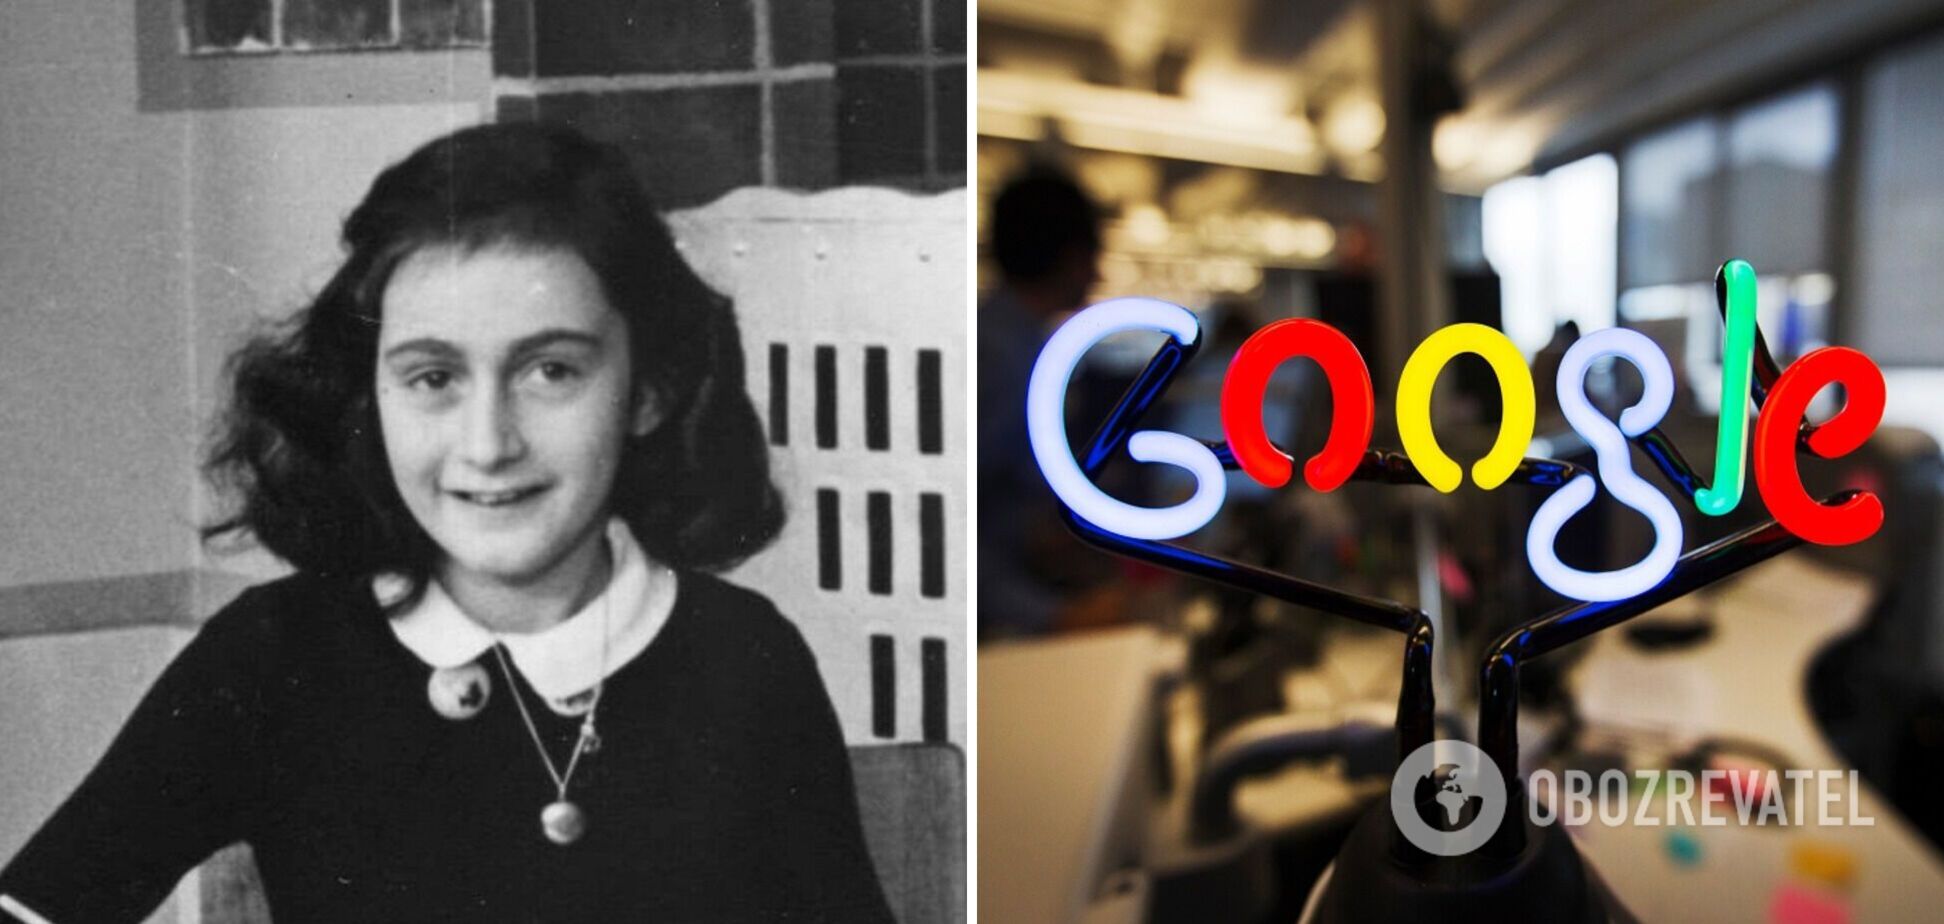 Google посвятил дудл трагическому дневнику жертвы Холокоста Анны Франк